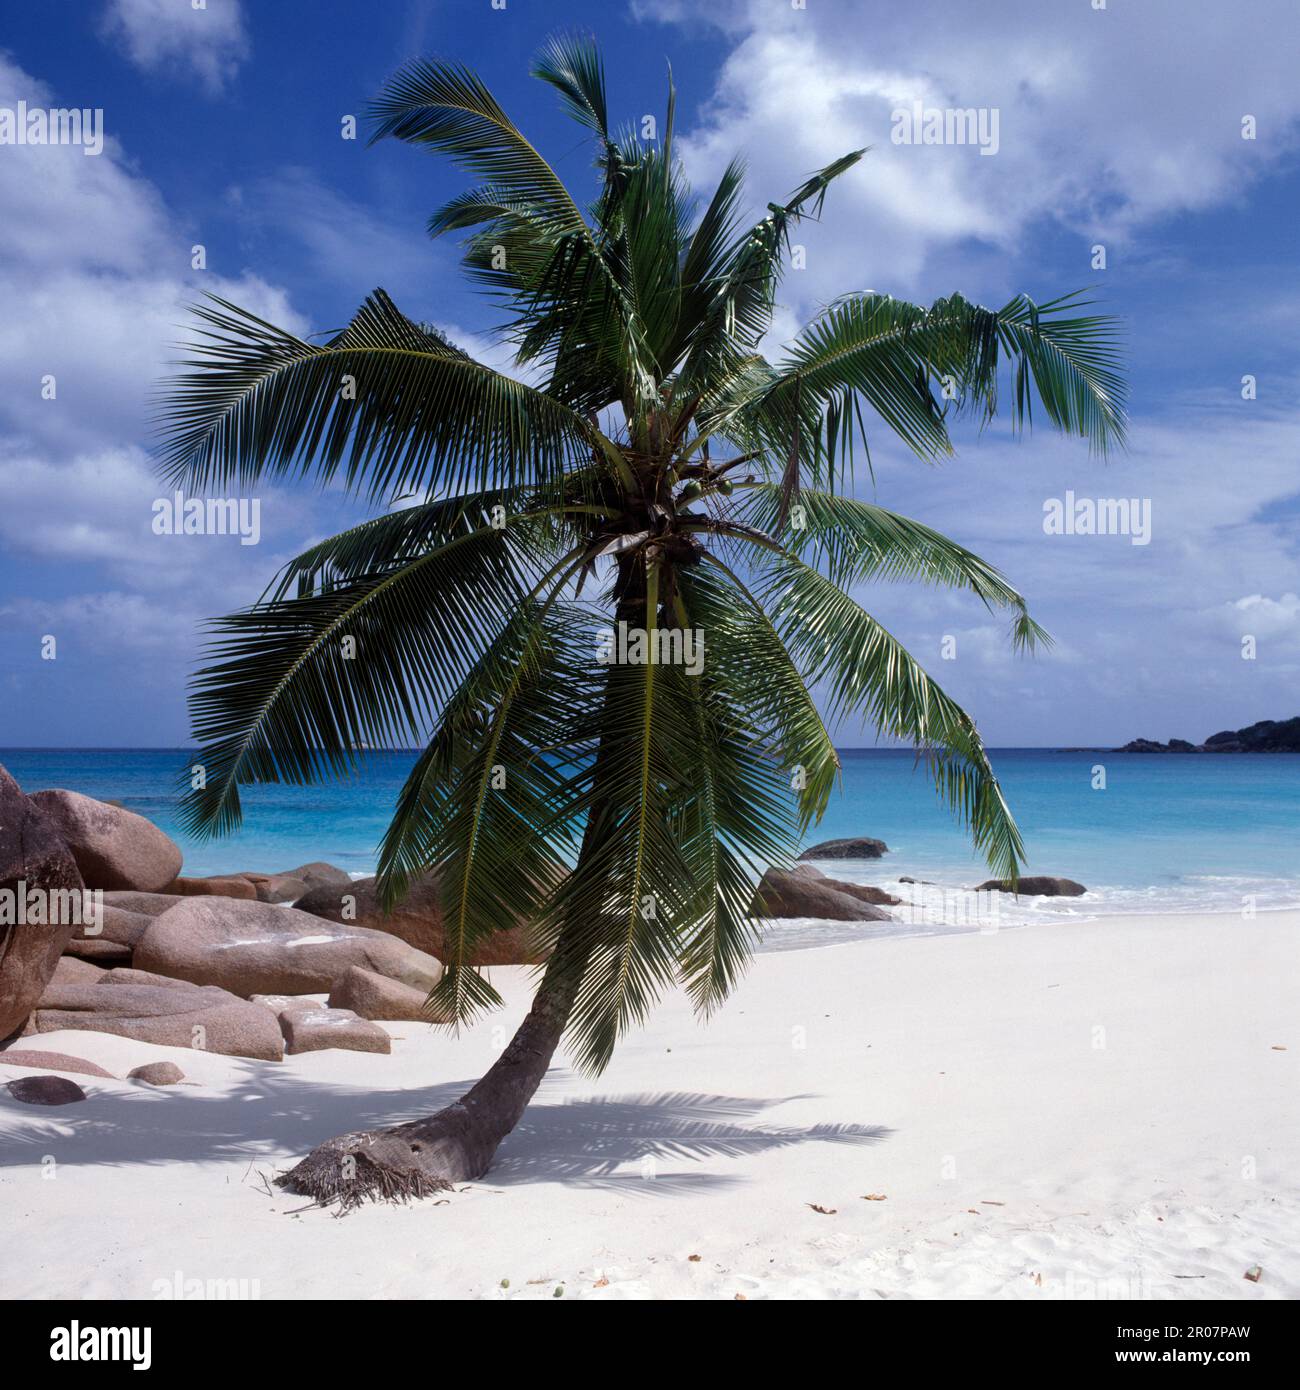 Einzelne Palme auf einem weissen Sandstrand vor dem blauen Meer, Praslin, Seychellen Stock Photo